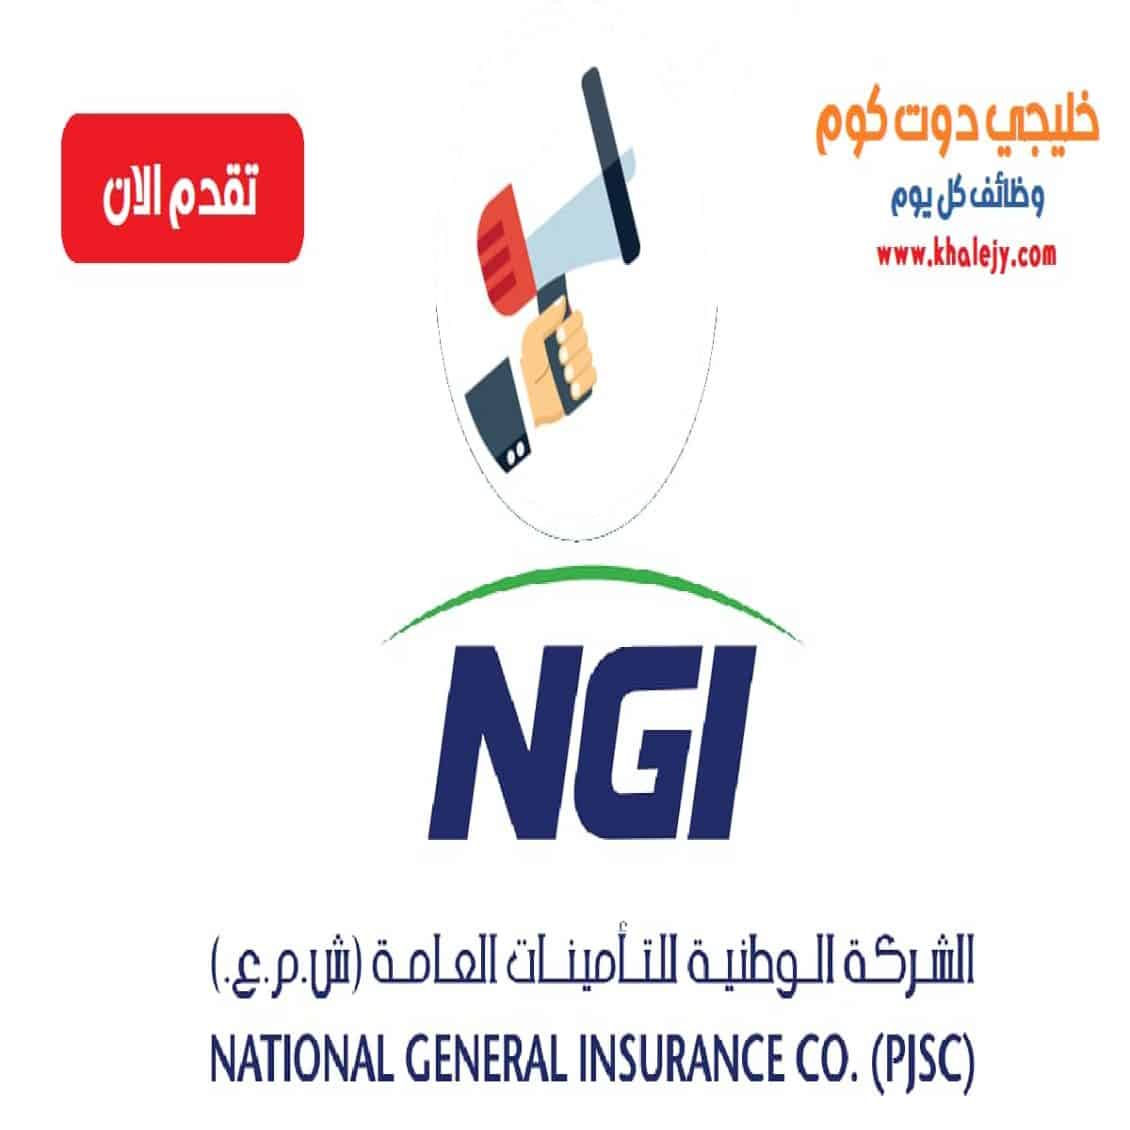 وظائف الشركة الوطنية للتأمينات العامة في دبي